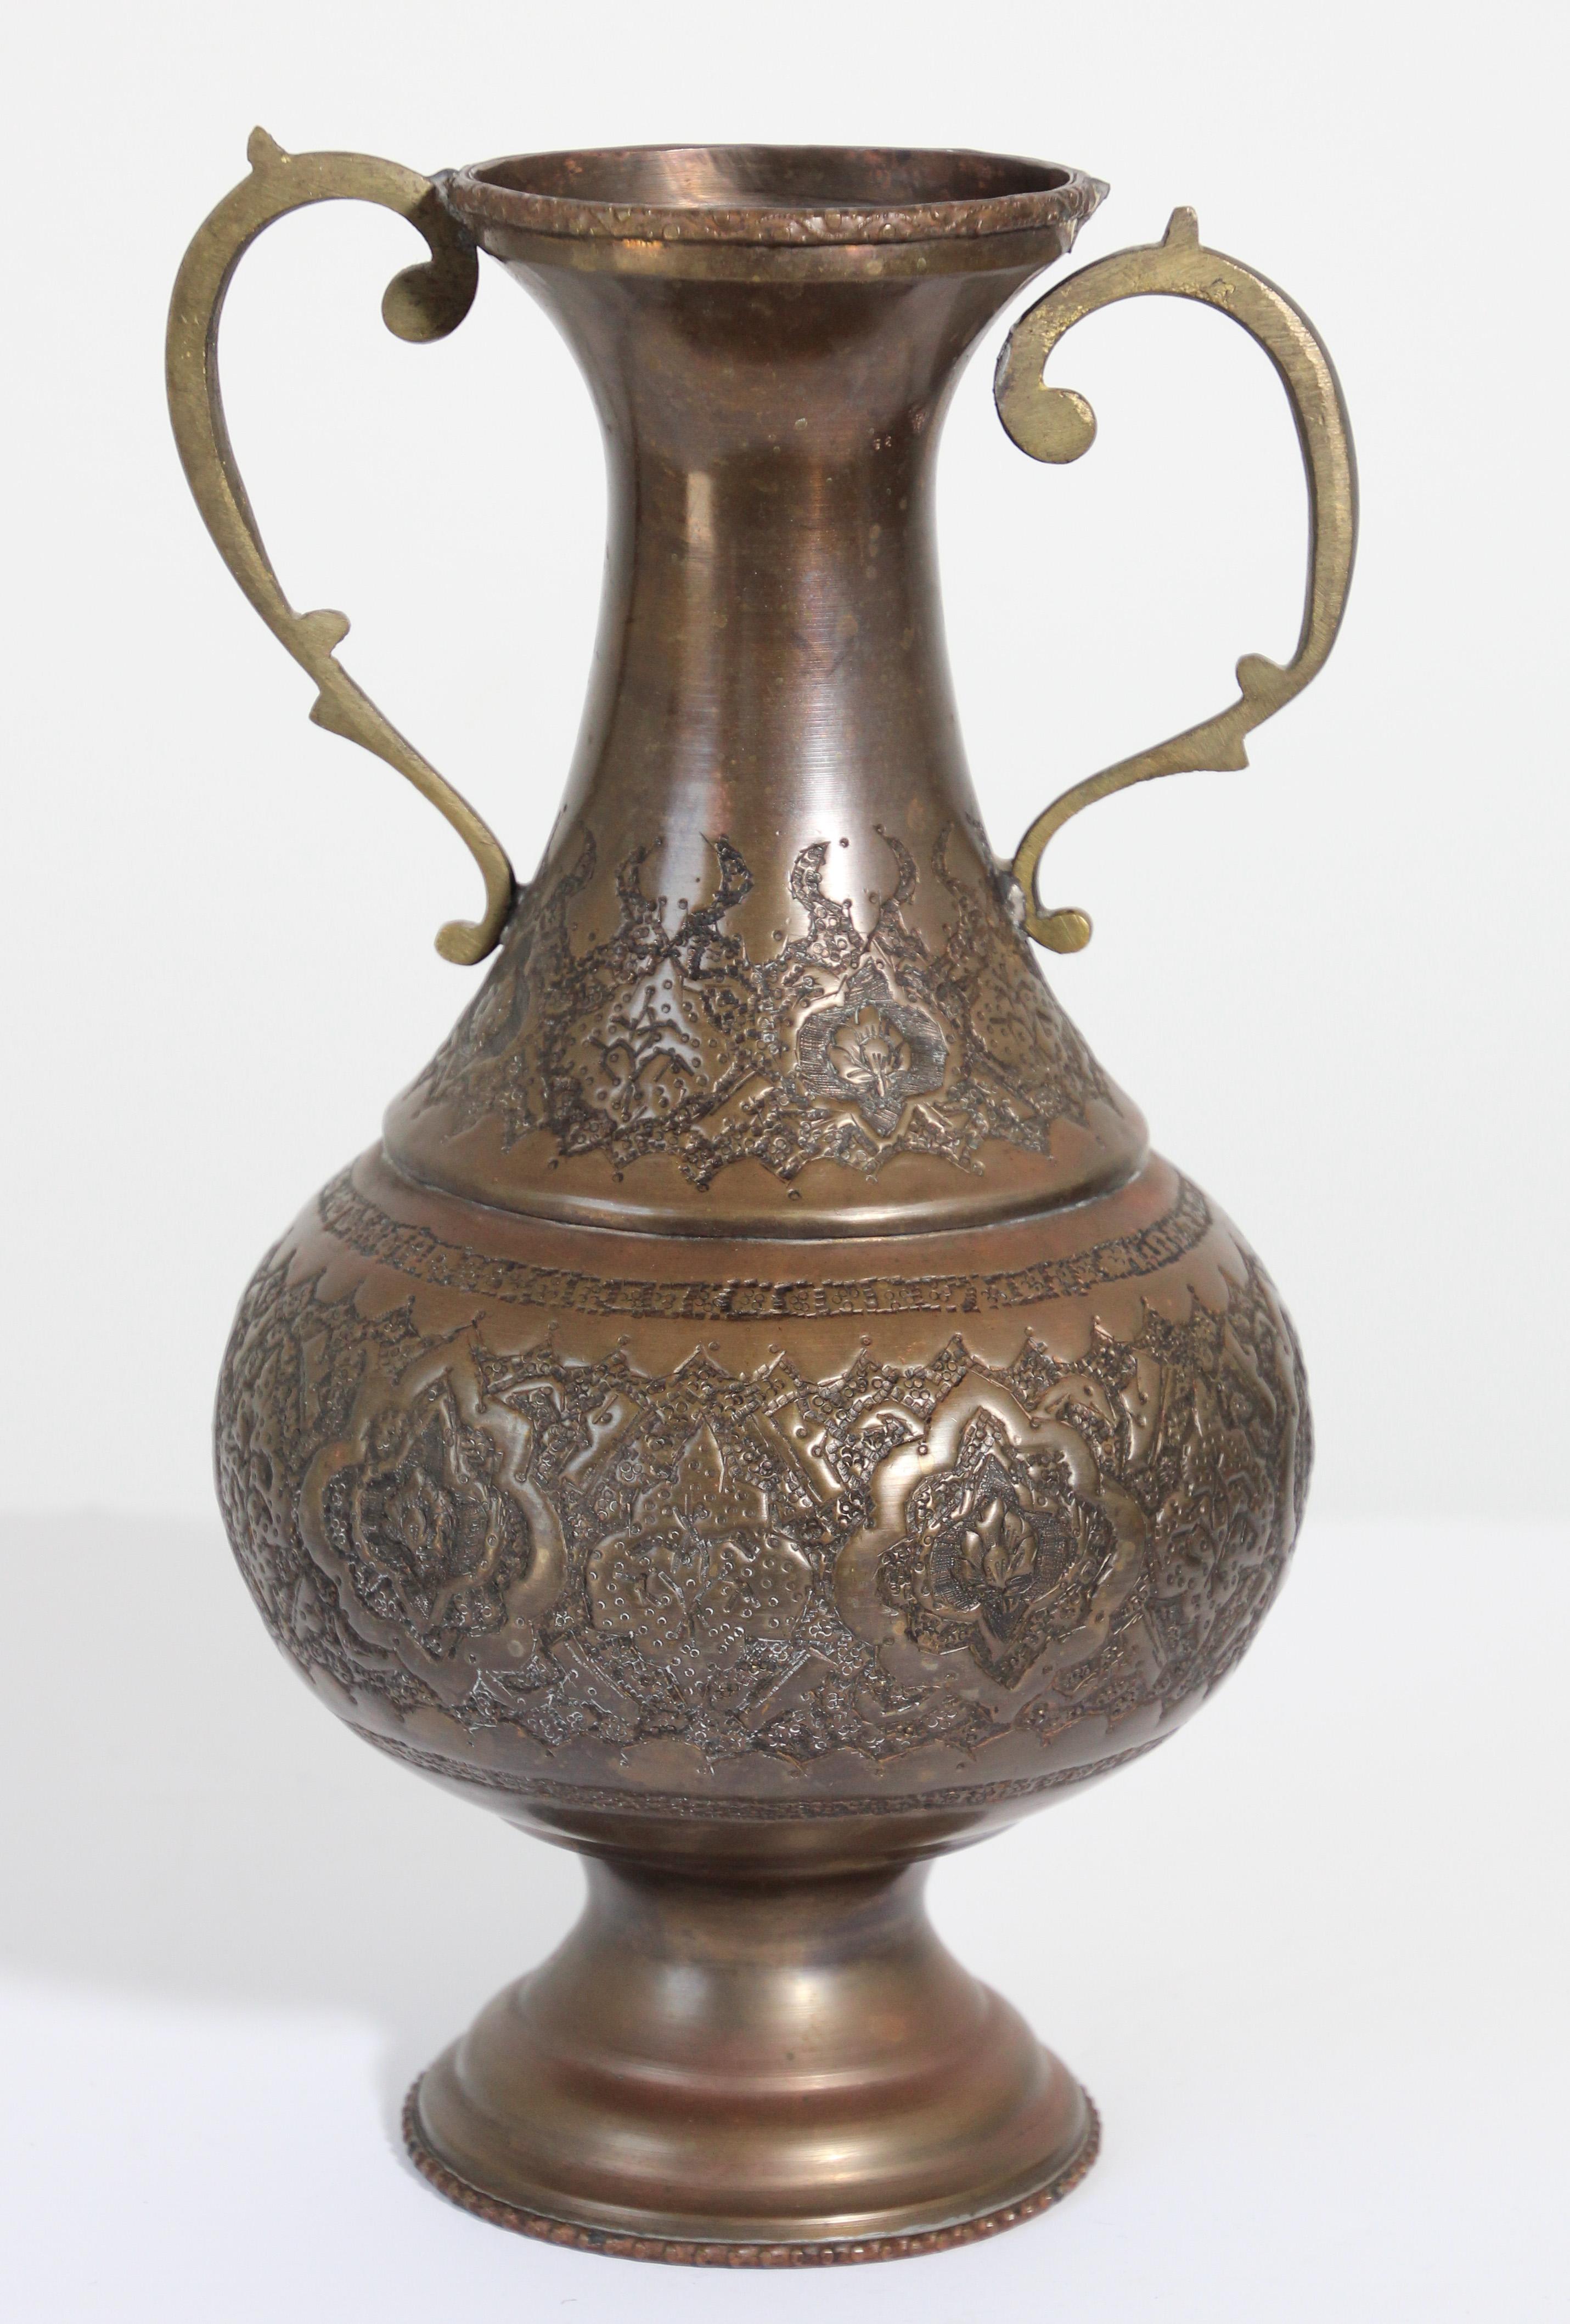 Vase en cuivre turc du Moyen-Orient, urne avec design traditionnel islamique mauresque en relief.
Articles métalliques en cuivre massif gravés, de style mauresque islamique, faits à la main.
Vase à pied avec poignée de chaque côté.
Une des